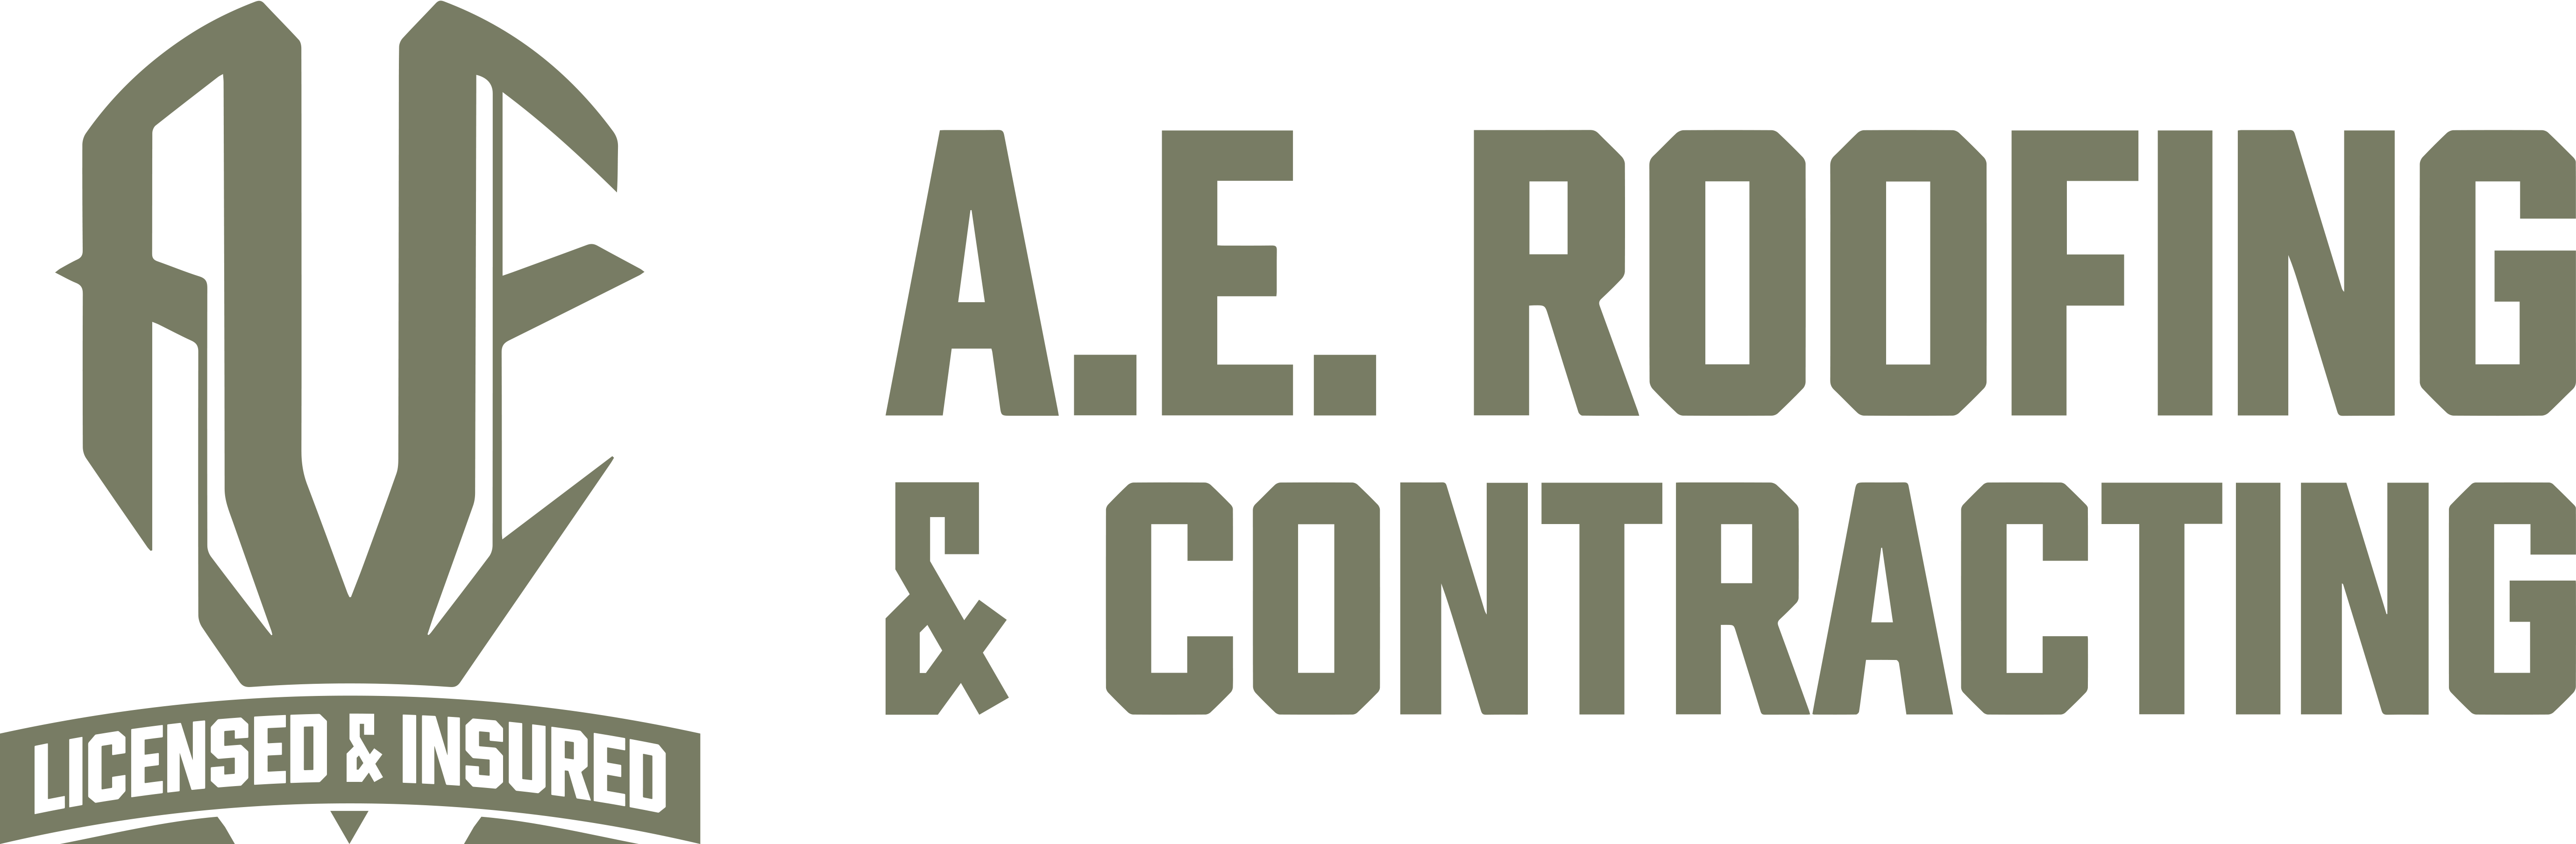 Aer New Logo